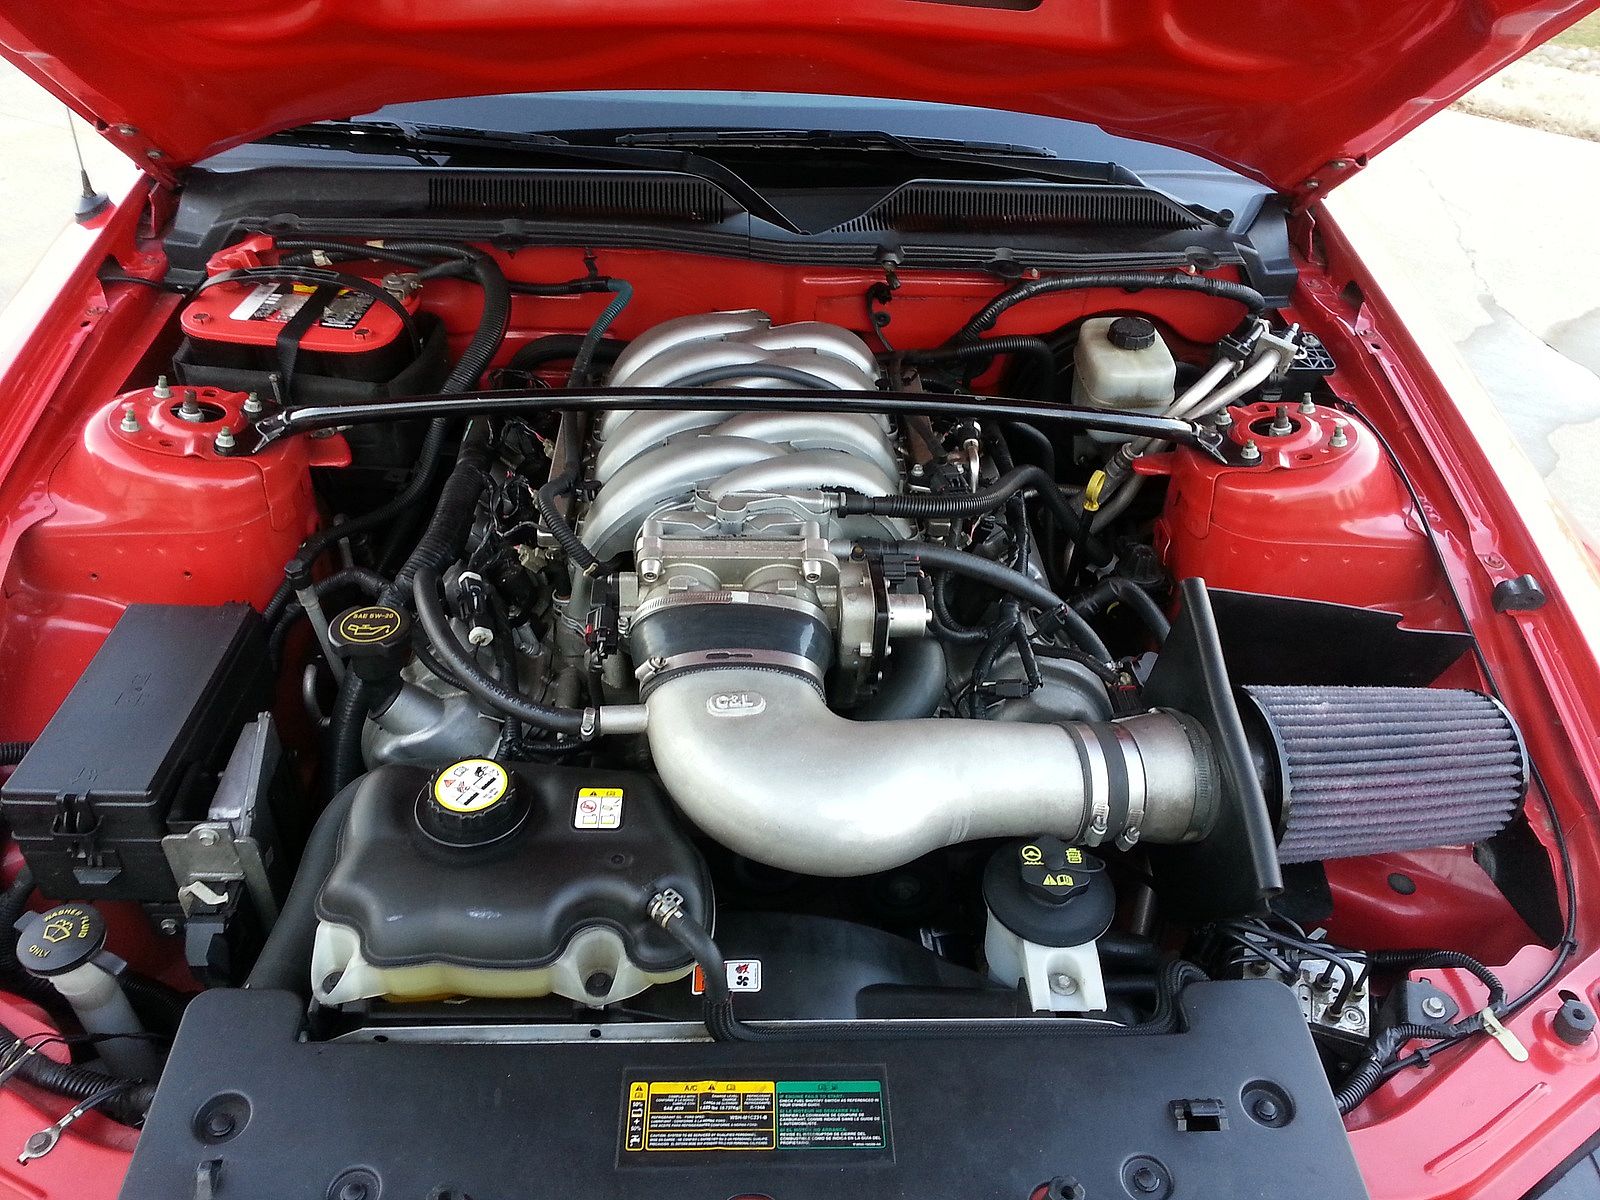 Mustang engine.jpg